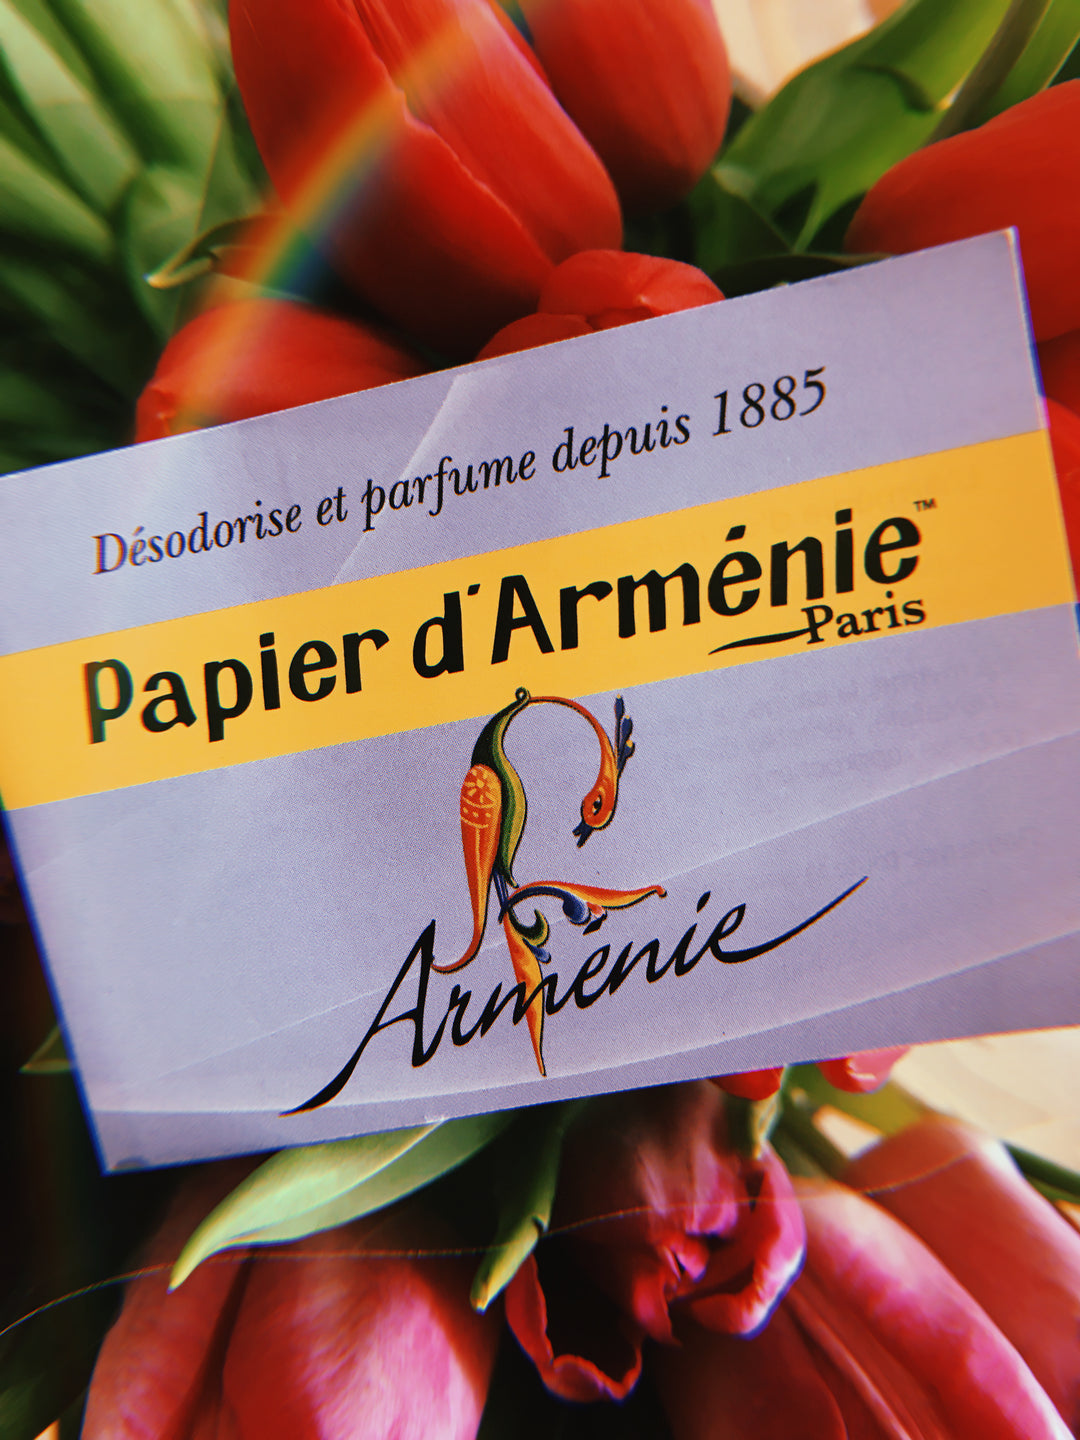 Papel de Armenia - Papier d´Arménie